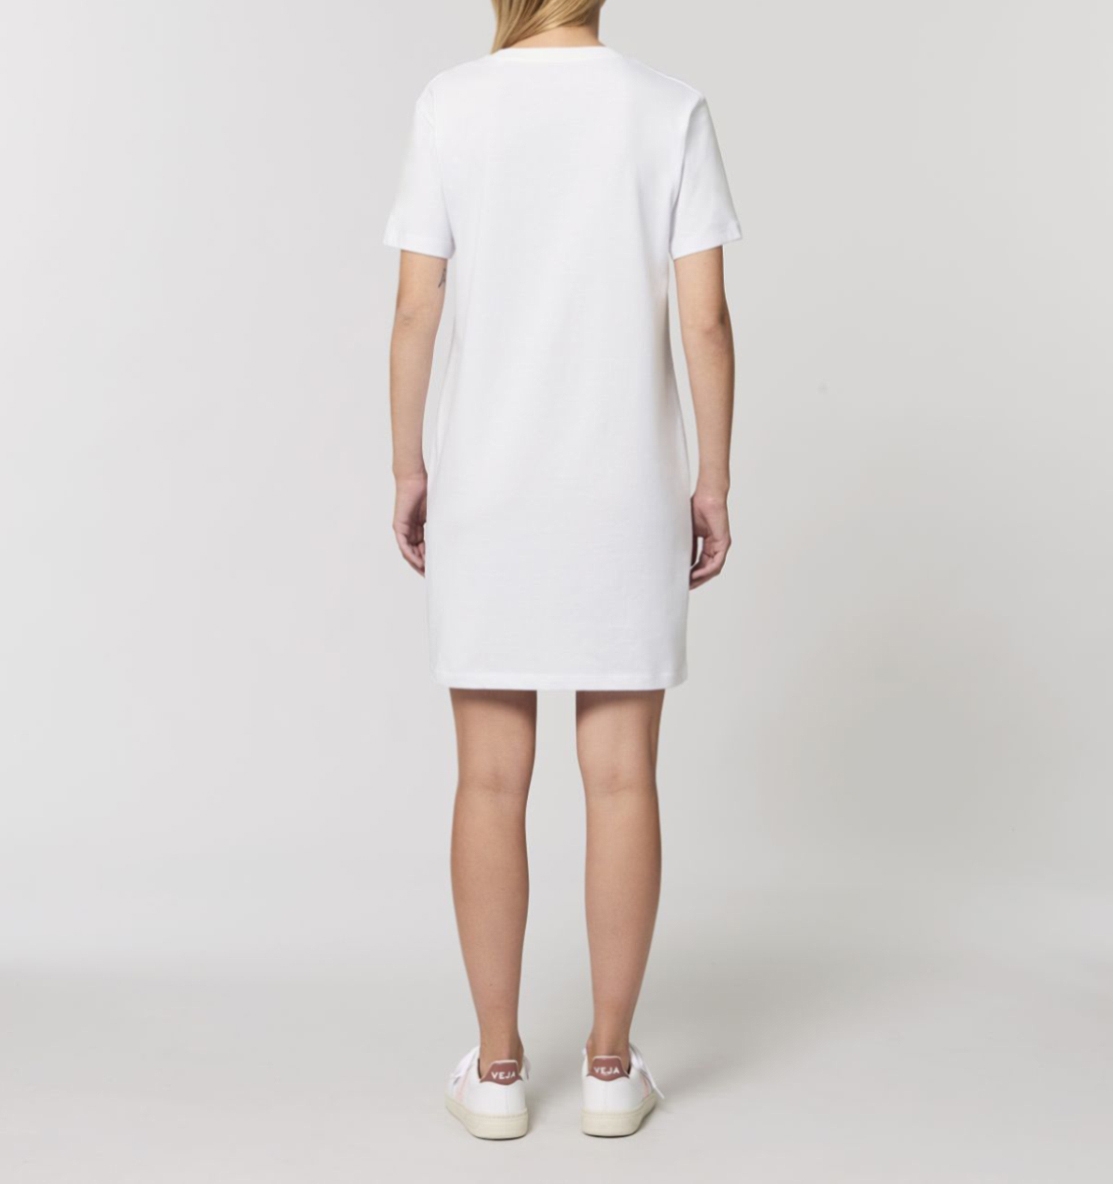 Farbella Design gedruckt auf Ladies Organic Shirtdress/T-Shirtkleid aus Bio-Baumwolle, faibleshop.com